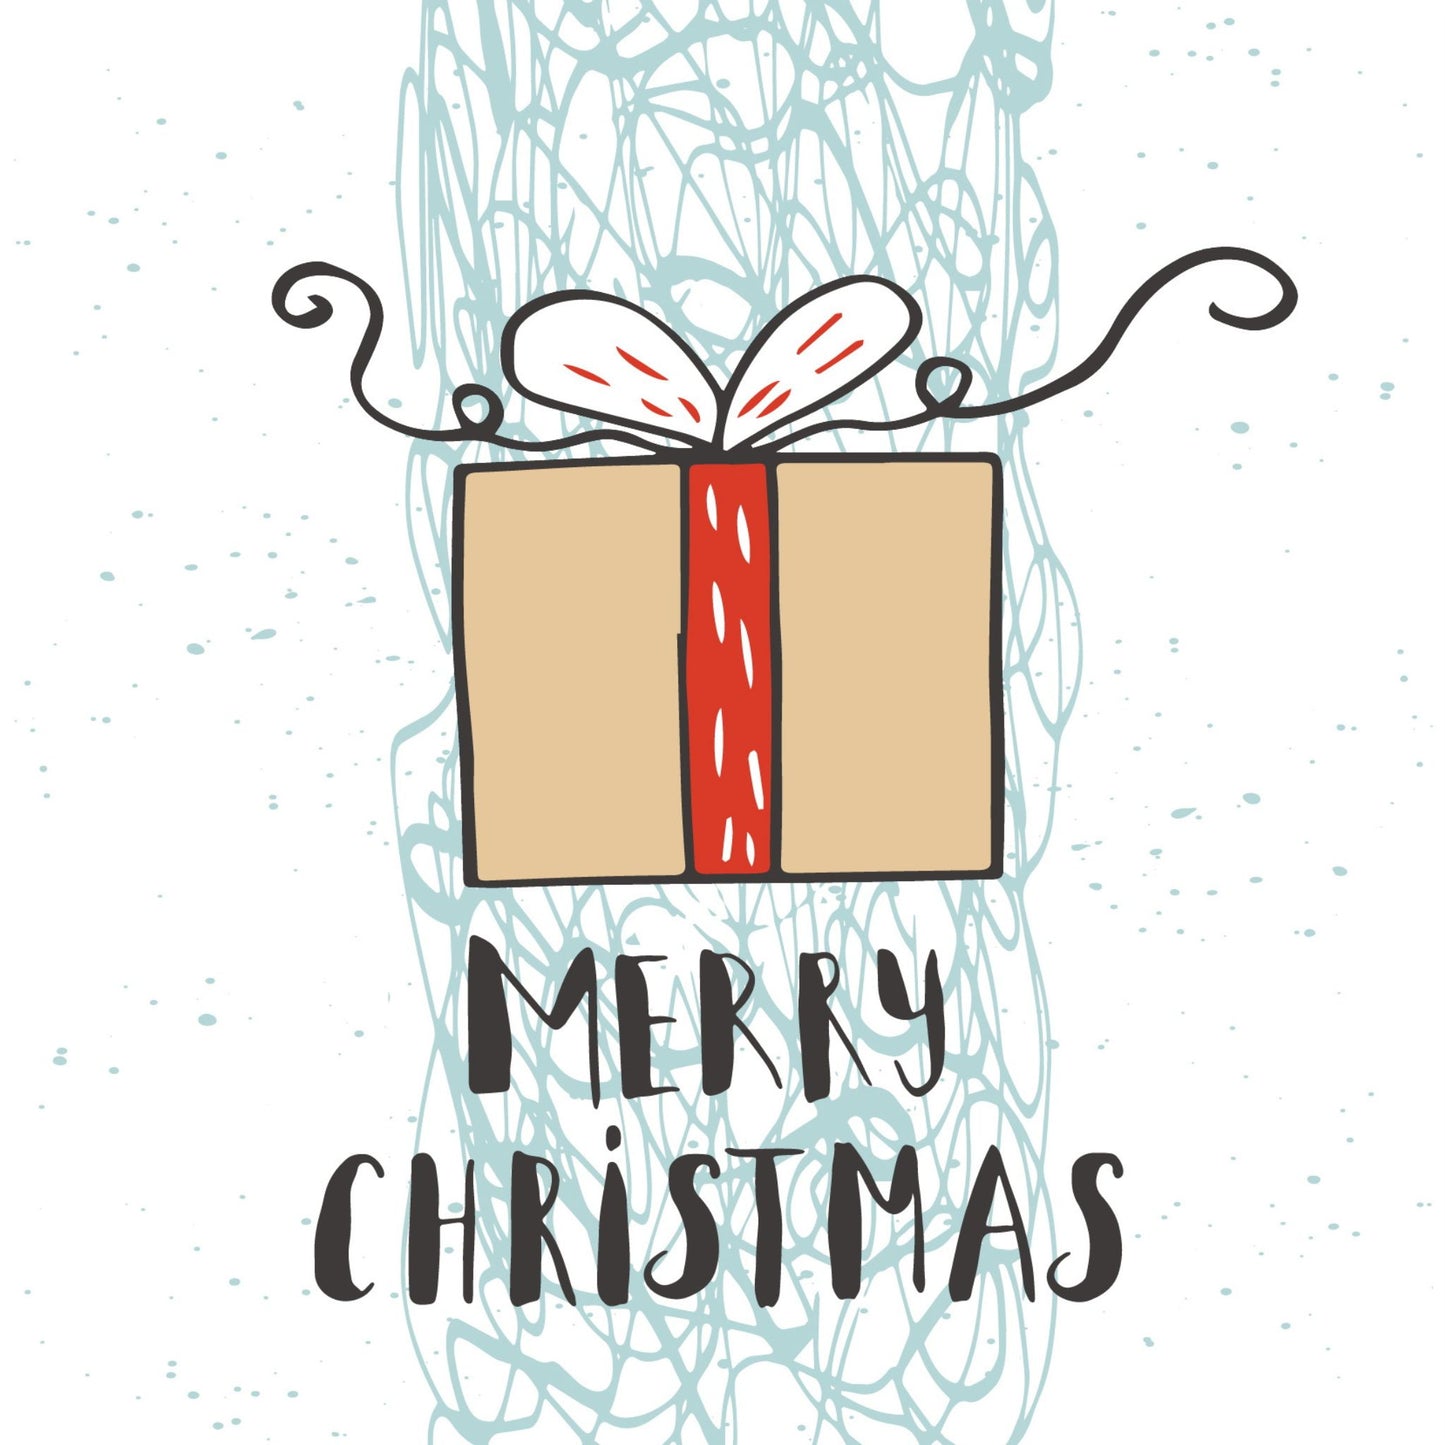 Håndtegnet cartoon julekort.  Motiv av julepakke med beige papir og rødt bånd. Tekst "merry christmas"